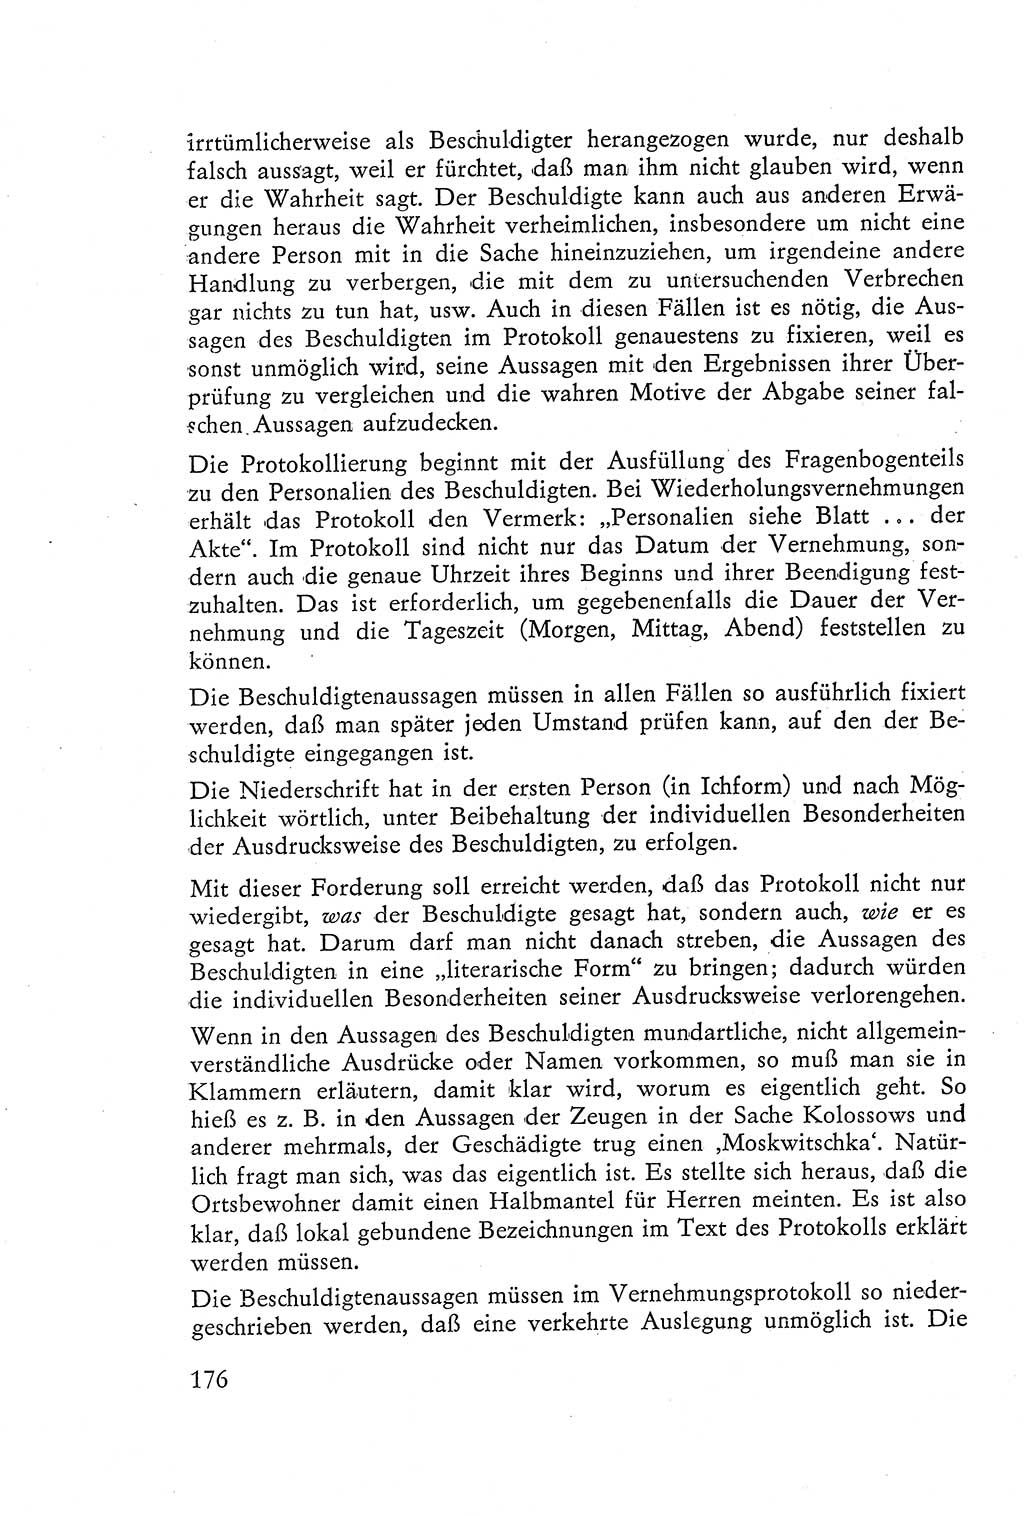 Die Vernehmung [Deutsche Demokratische Republik (DDR)] 1960, Seite 176 (Vern. DDR 1960, S. 176)